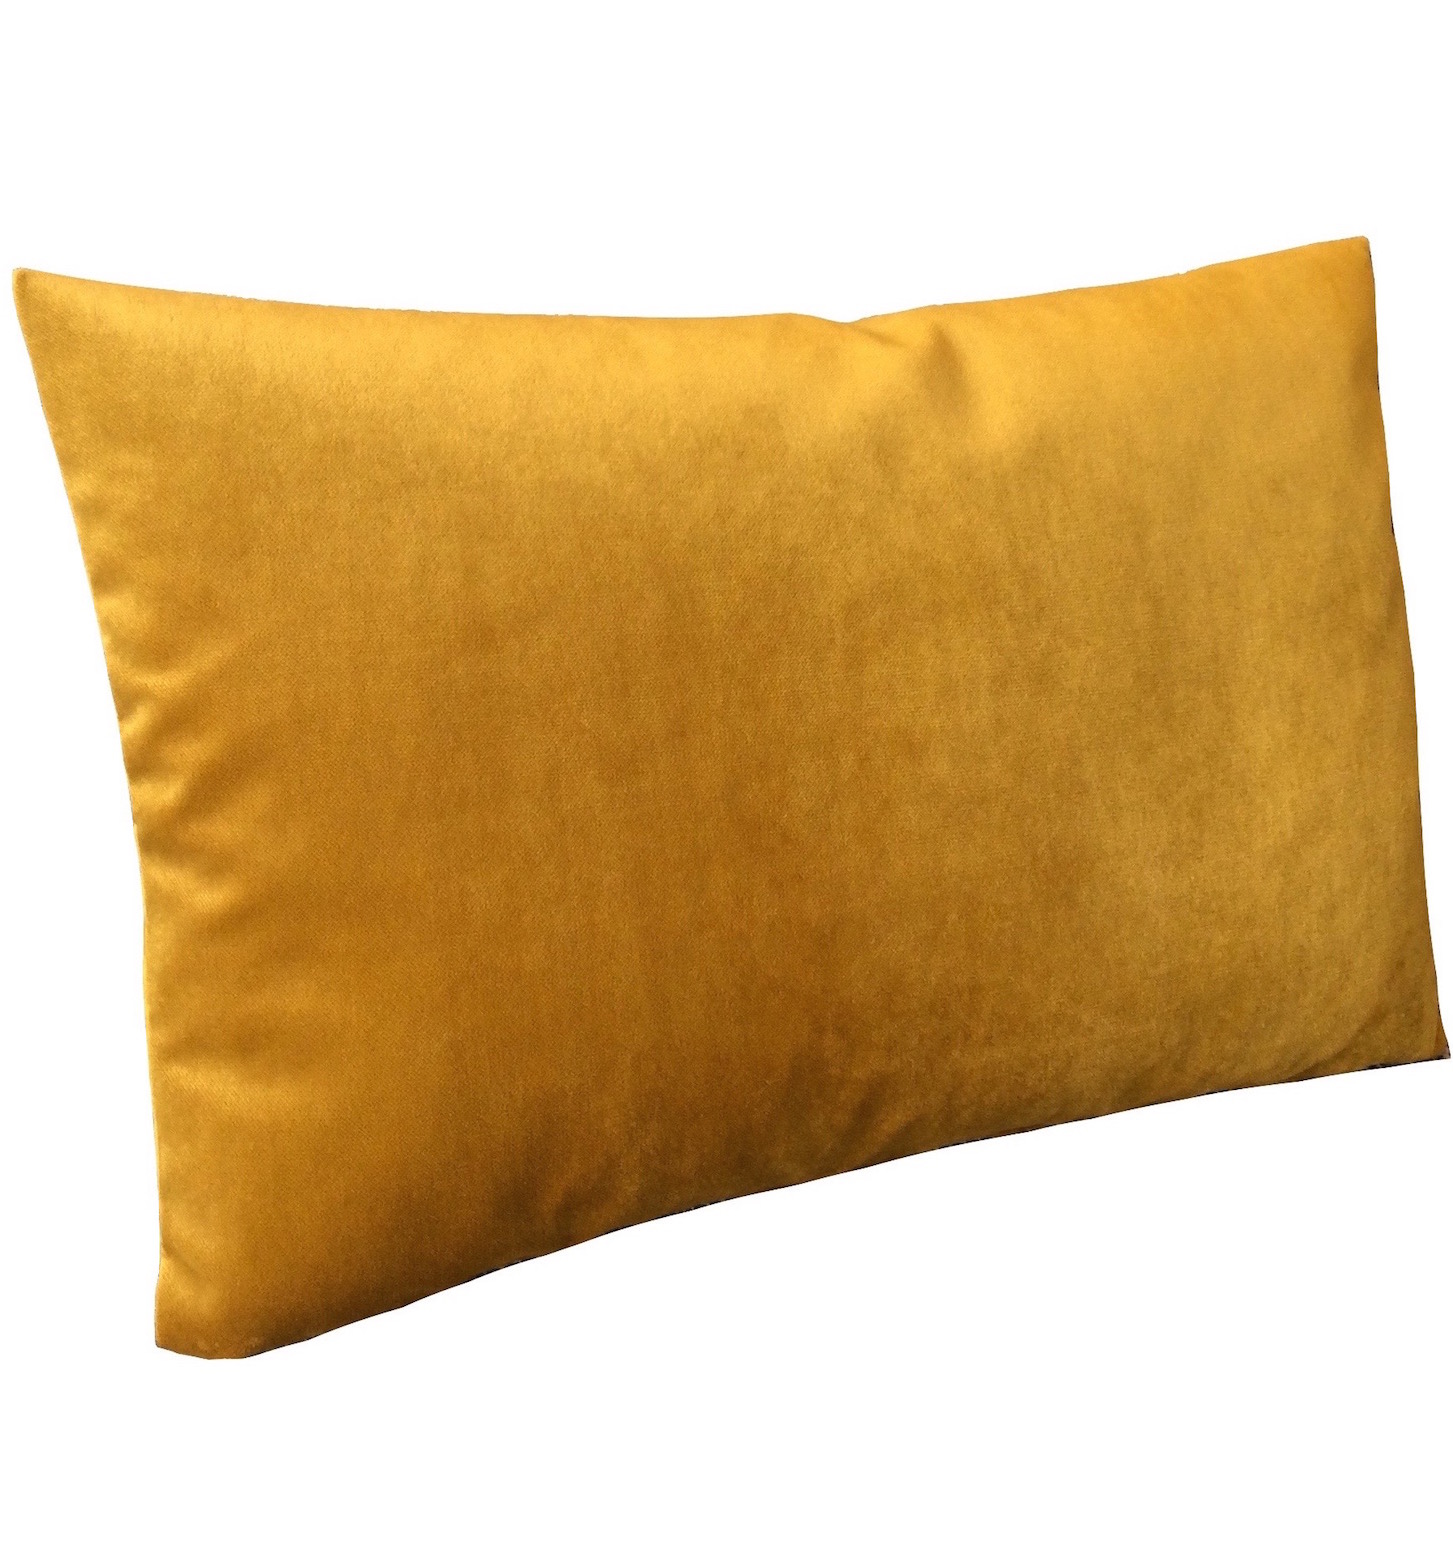 Hochwertige Samtkissen in gold-gelb mit brillanter Haptik. Format: 65 cm x 40 cm.